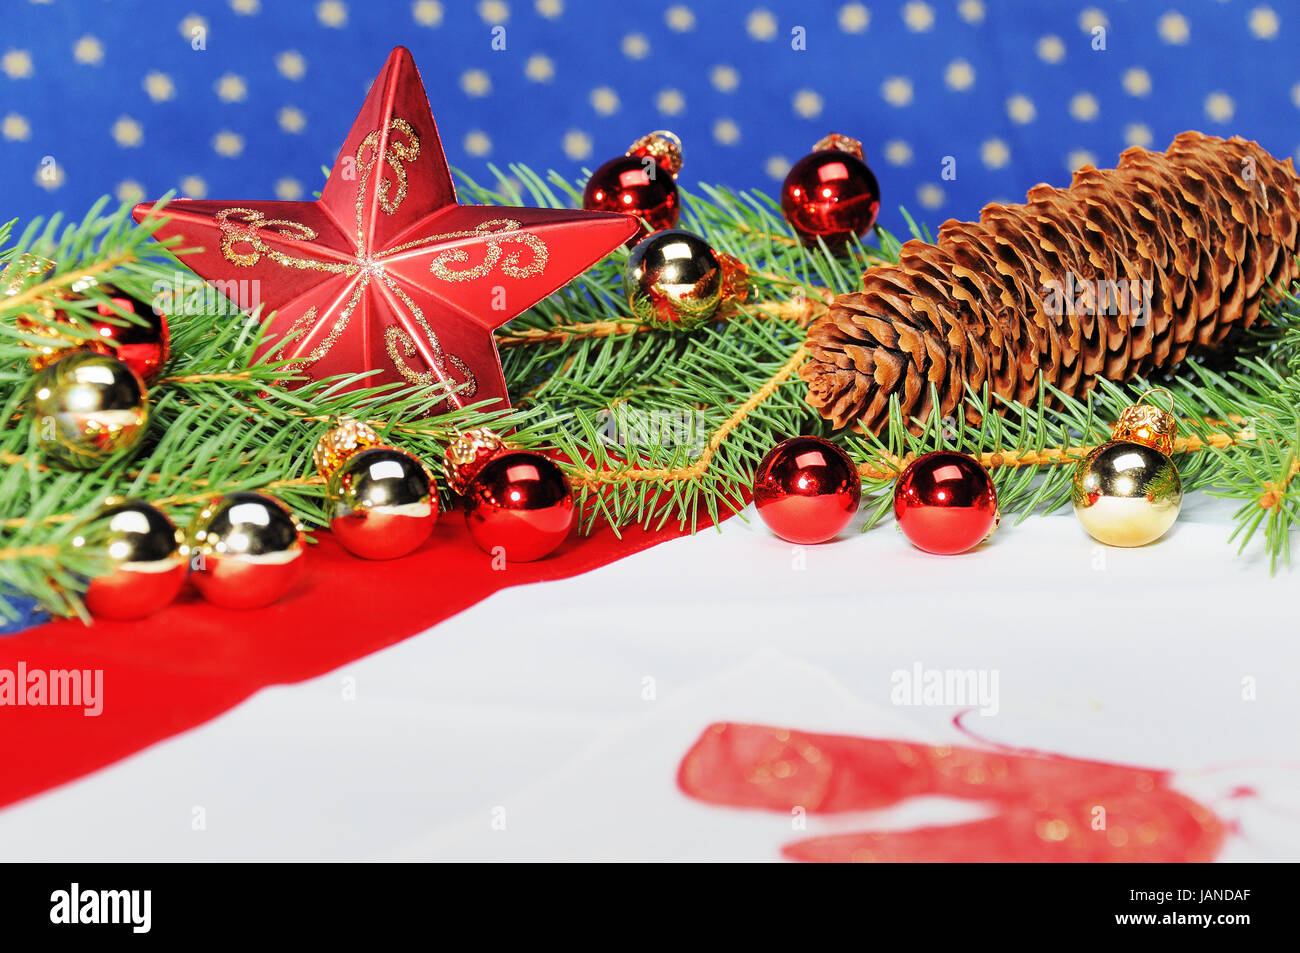 Weihnachtlich dekorierter Tisch mit Tannenzweigen, Christbaumkugeln und Stern Stock Photo